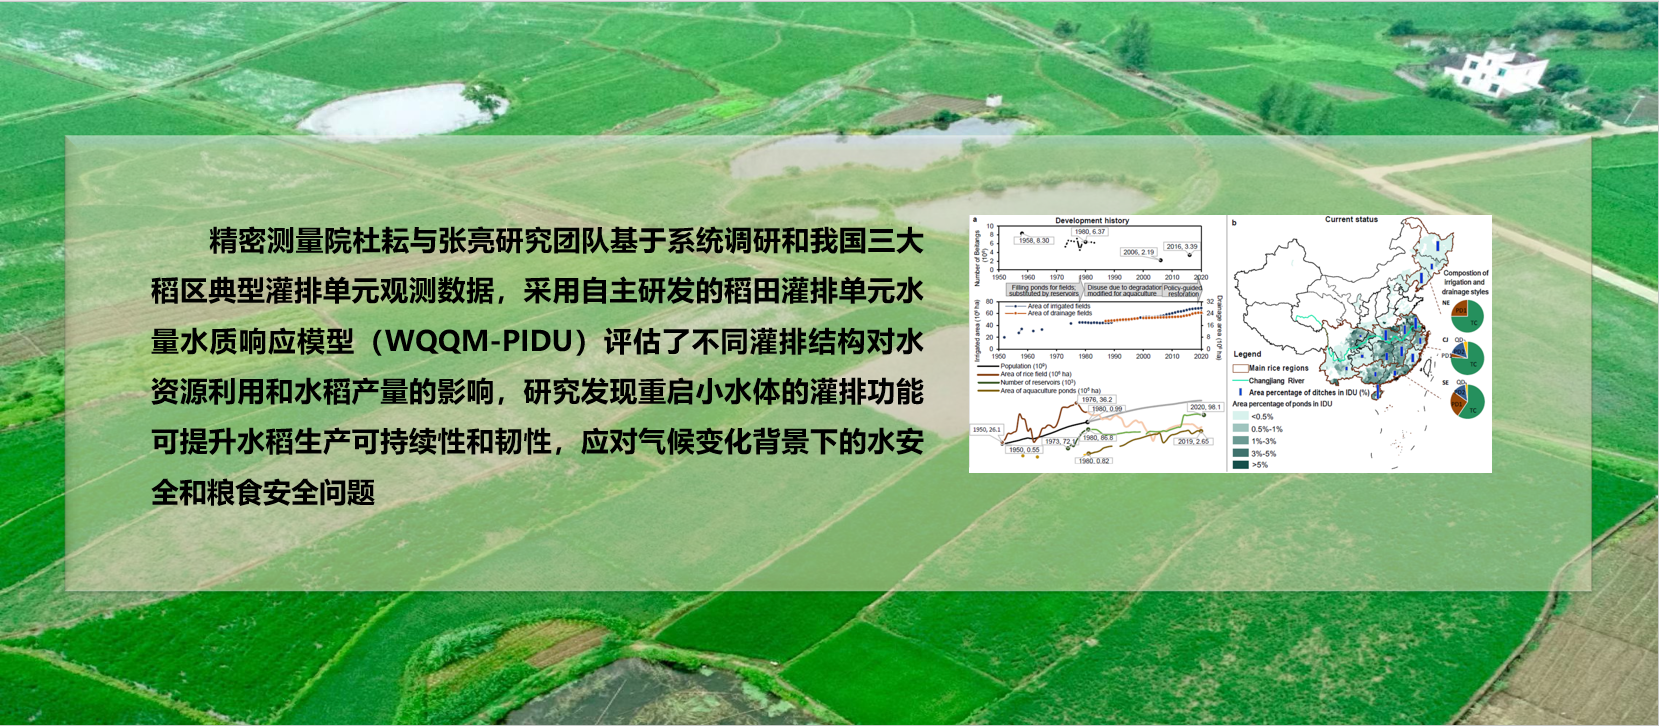 精密测量院提出水稻可持续性生产的近自然解决方案